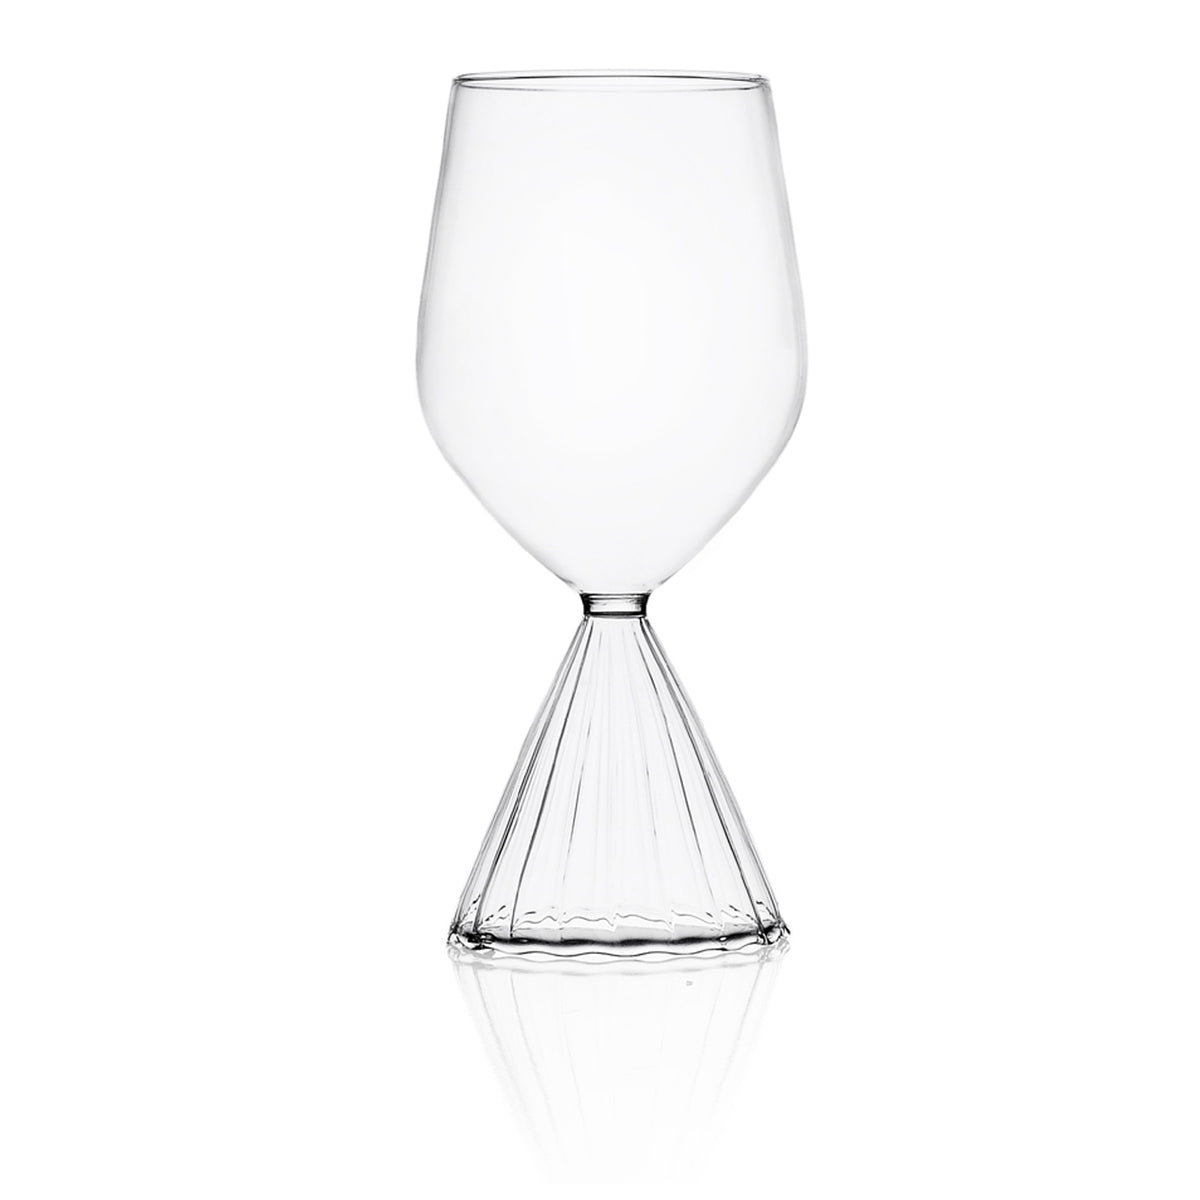 Tutu White Wine Glass, Set of 4